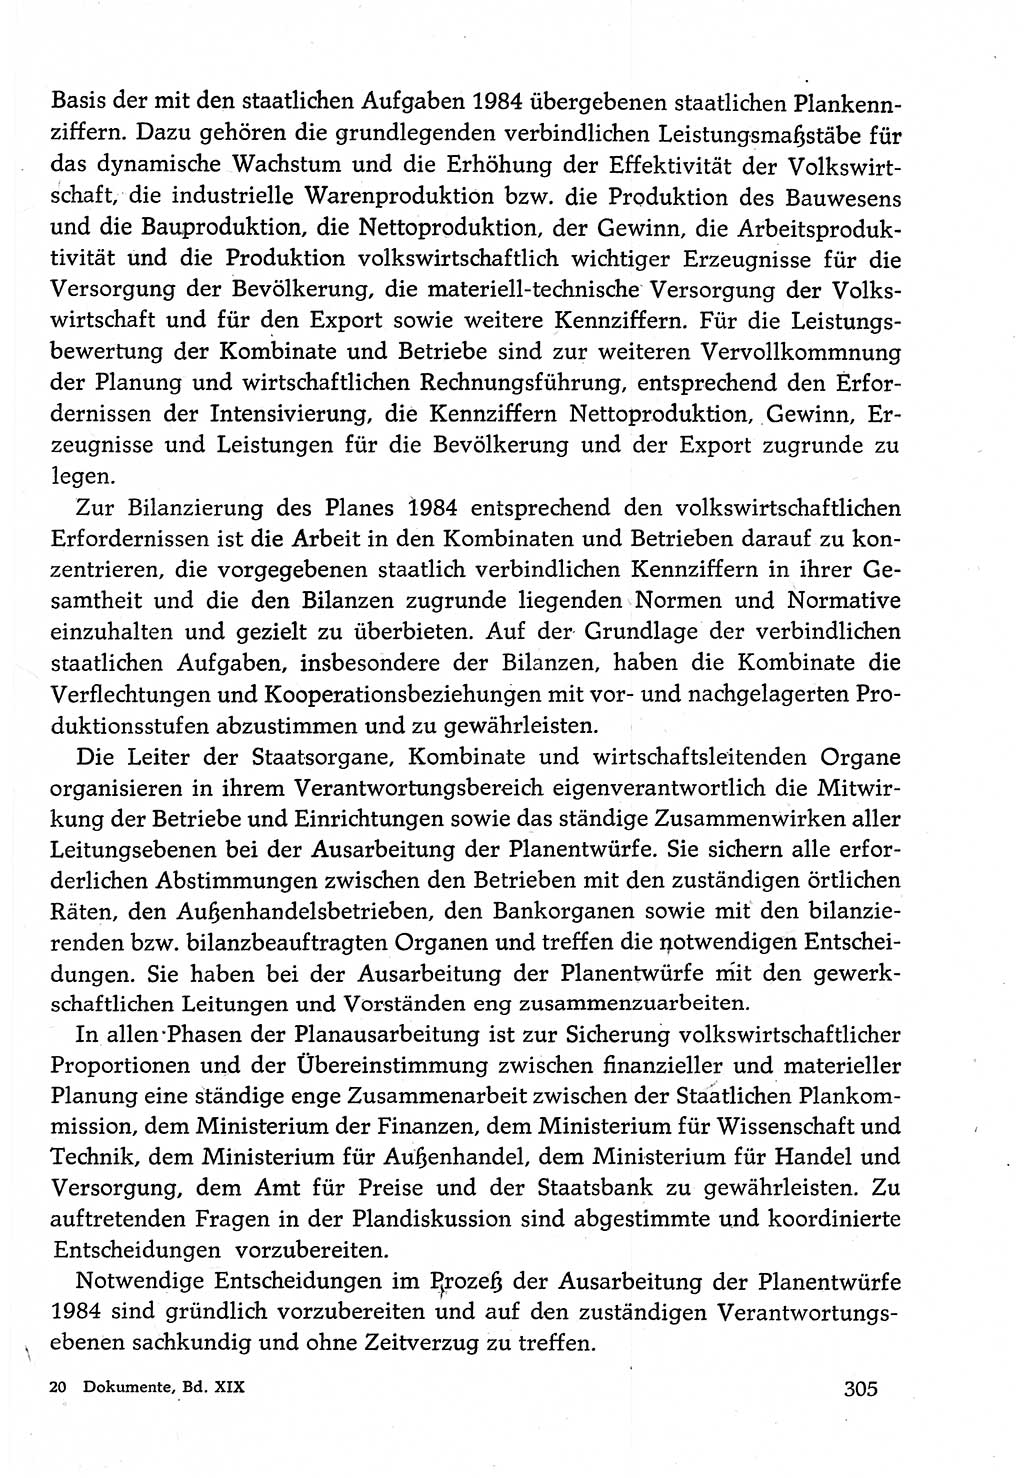 Dokumente der Sozialistischen Einheitspartei Deutschlands (SED) [Deutsche Demokratische Republik (DDR)] 1982-1983, Seite 305 (Dok. SED DDR 1982-1983, S. 305)